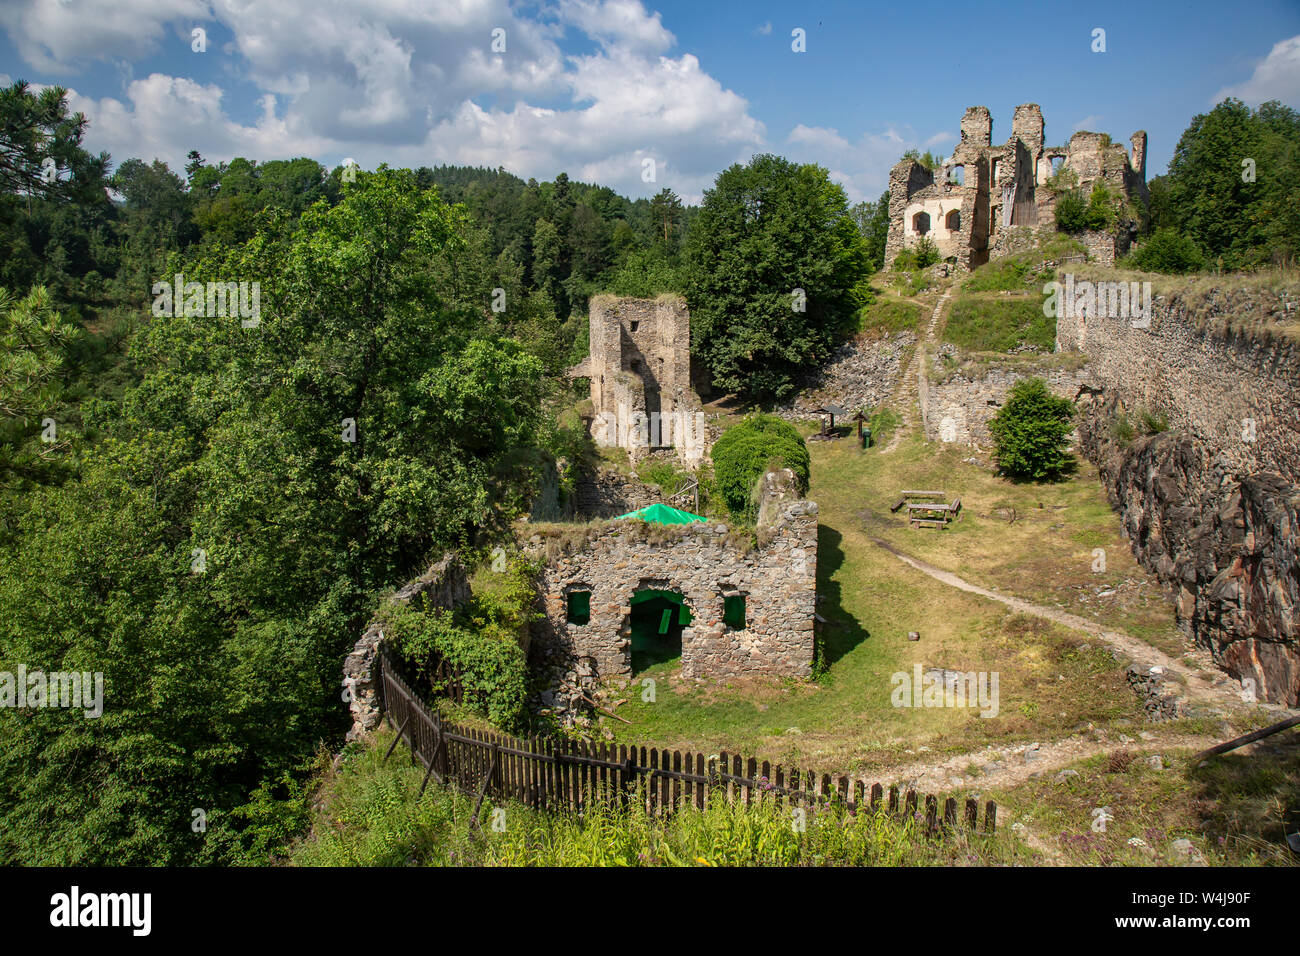 Divci kamen, Trisov, Tschechien, Ansicht von Mädchen rock Ruine, die Ruine von Schloss in Südböhmen in der Nähe von Cesky Krumlov Stadt Stockfoto